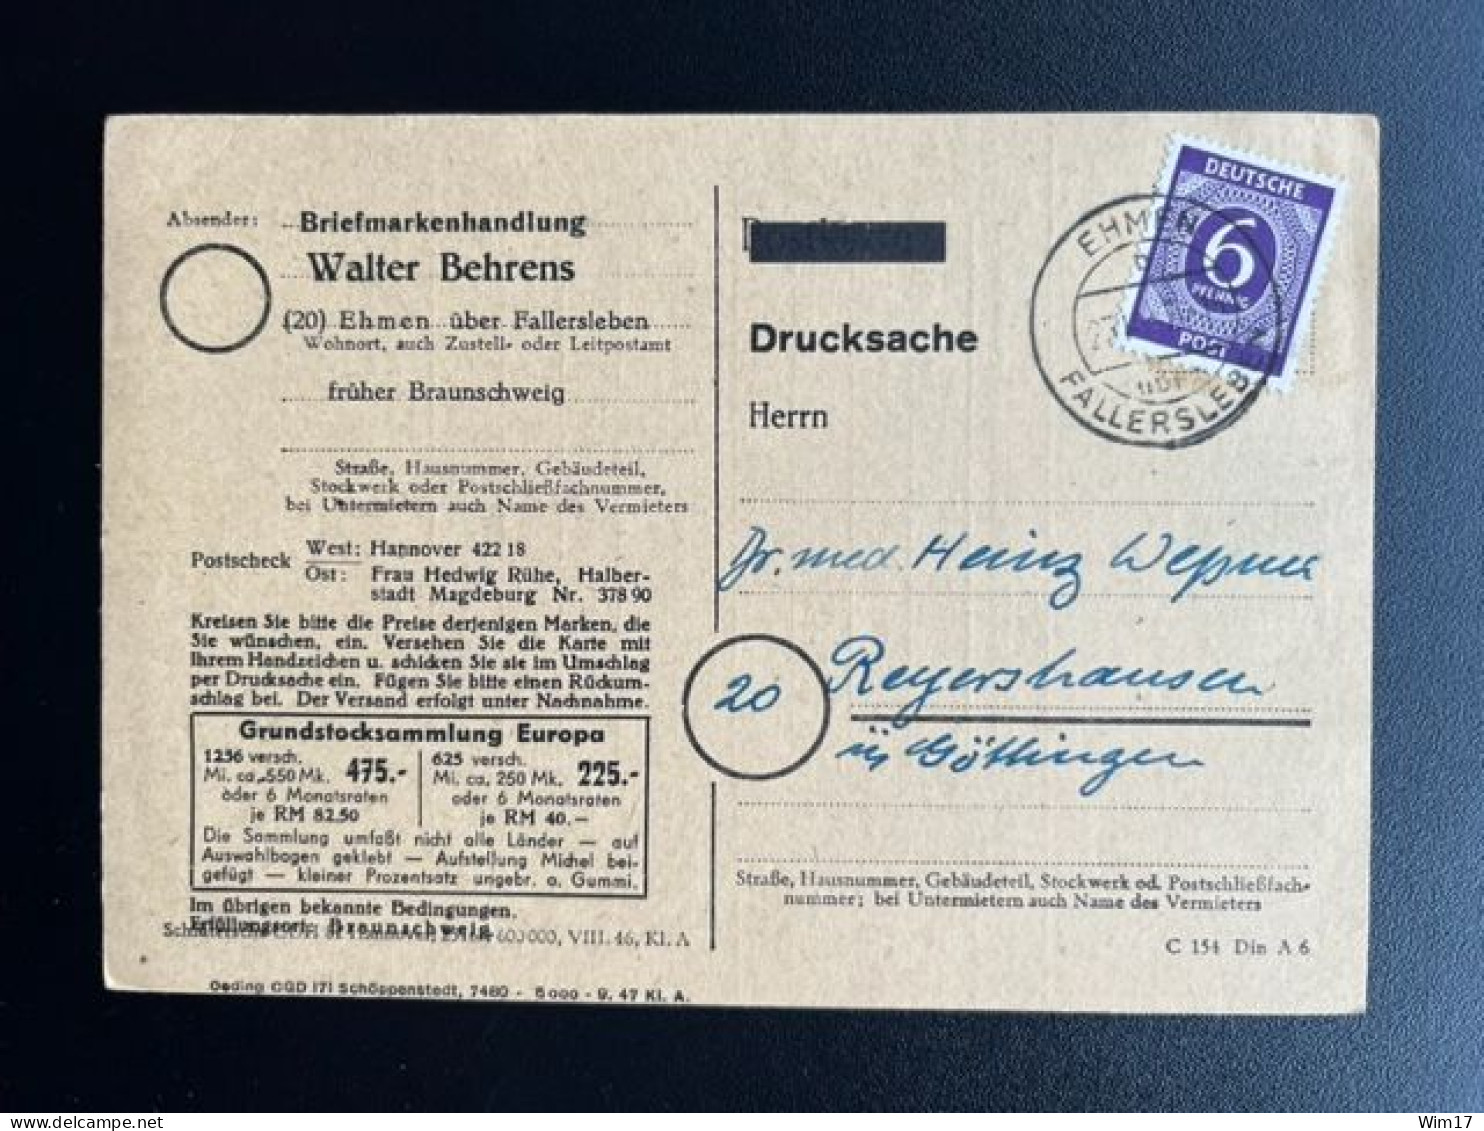 GERMANY 1947 POSTCARD EHMEN TO REYERSHAUSEN 23-10-1947 DUITSLAND DEUTSCHLAND - Ganzsachen